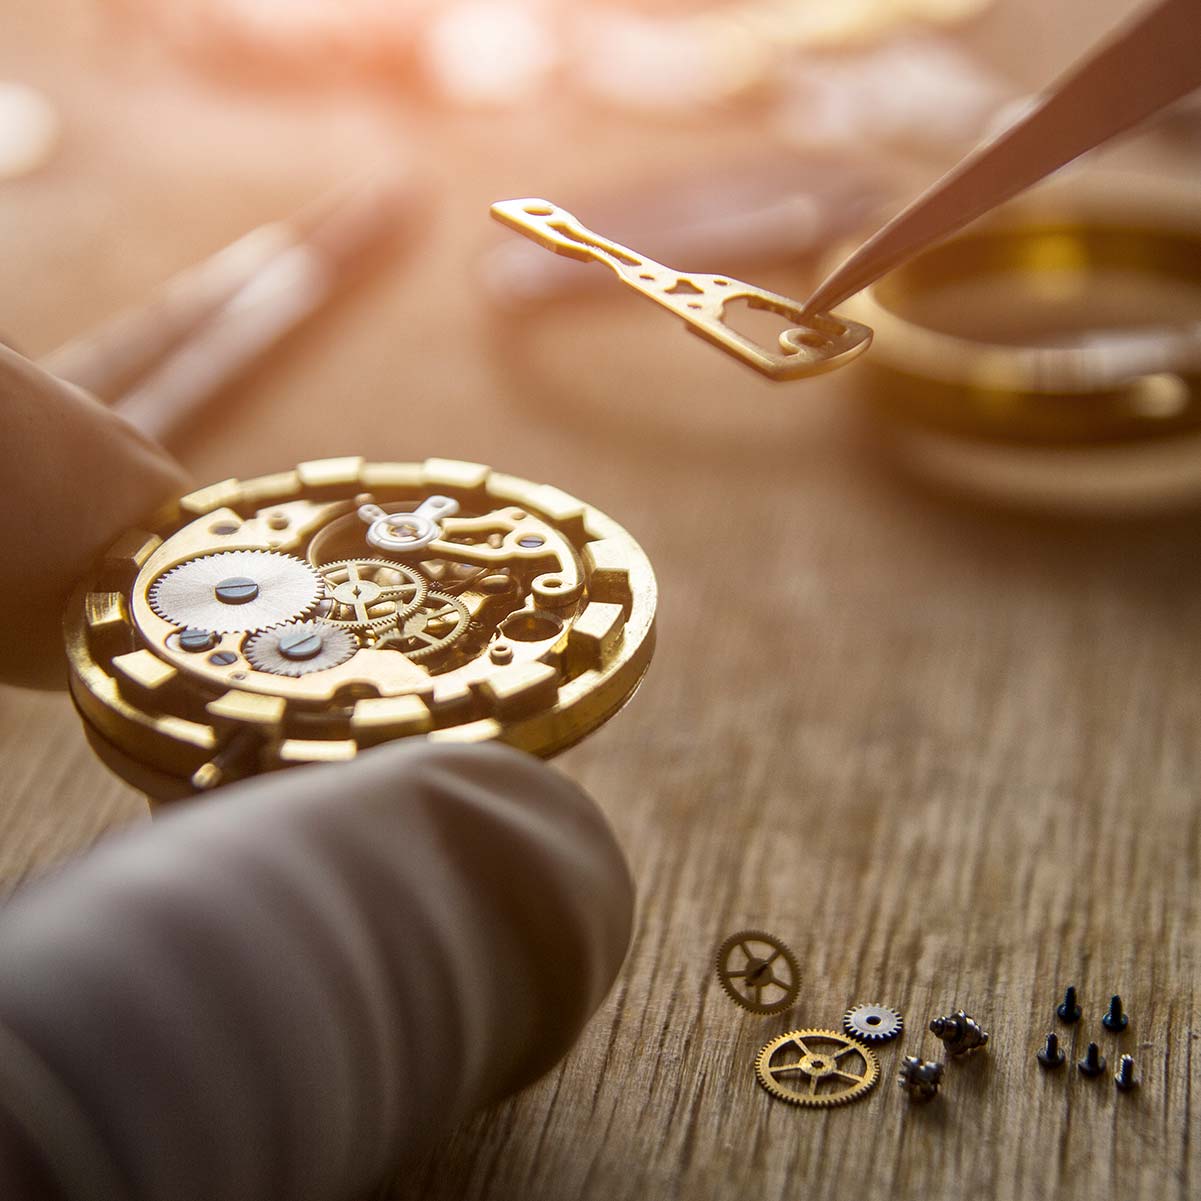 Reparaturen und Wartungen Ihrer Uhr bei Goldschmiede Jaqueline